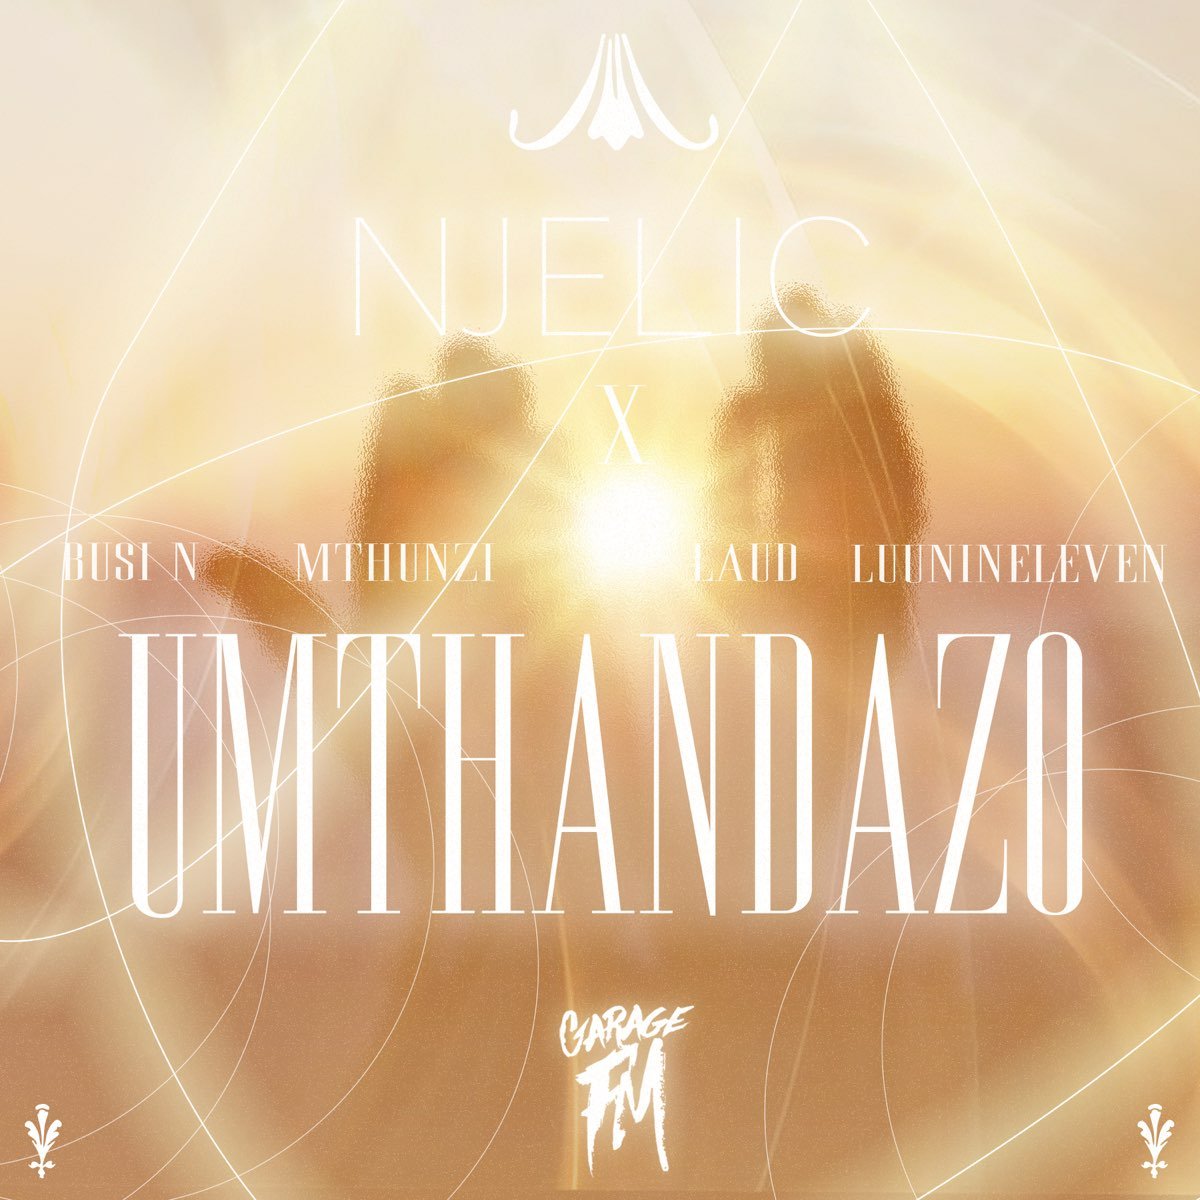 Njelic – Umthandazo ft. Busi N, Mthunzi, Laud & Luu Nineleven mp3 download free lyrics